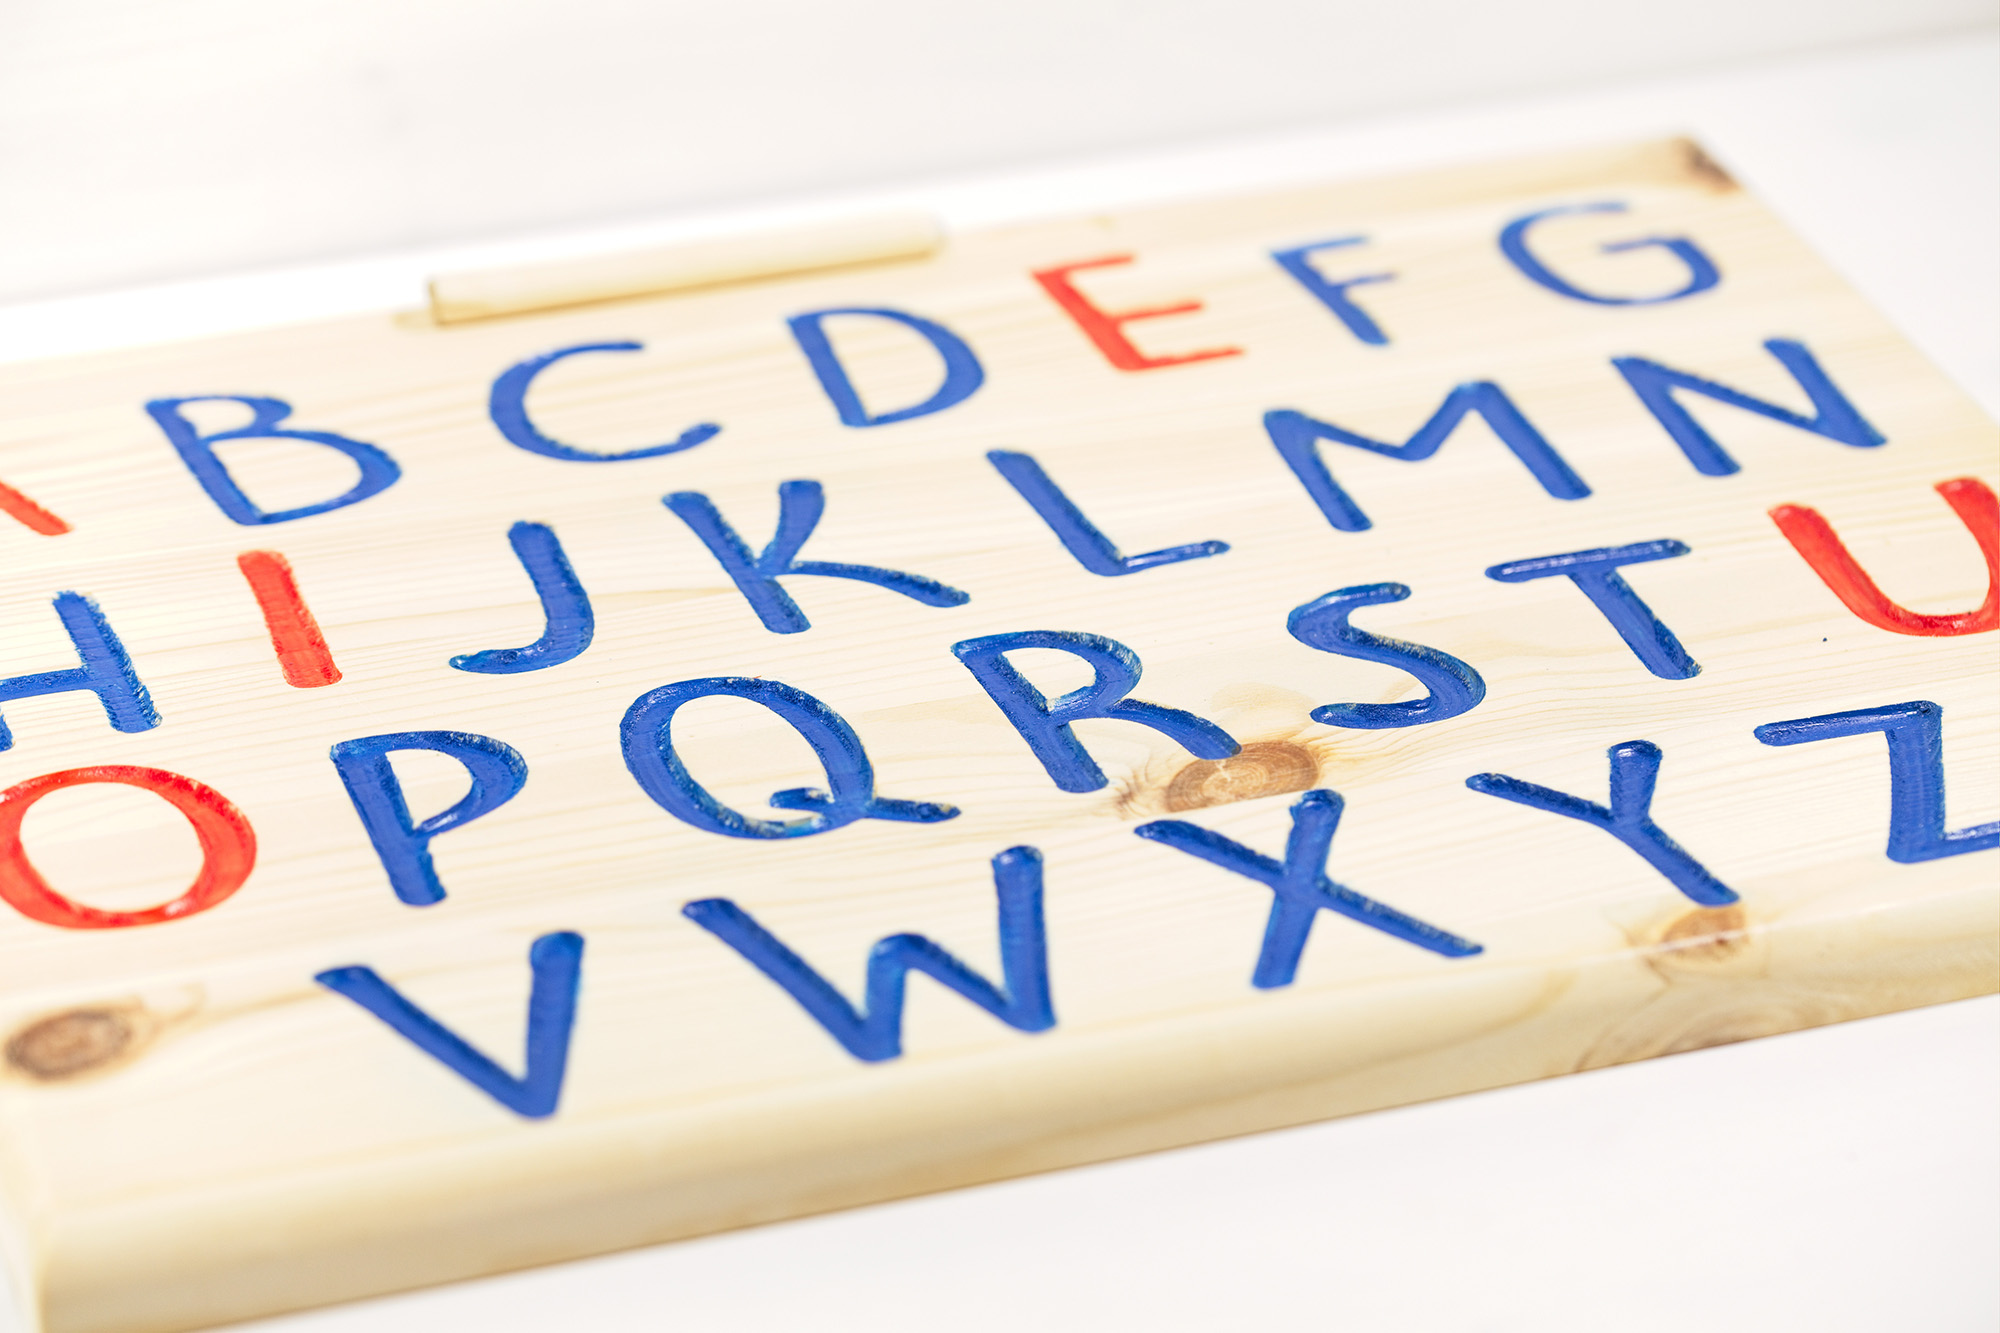 Tracing board - Alfabeto da ricalcare in legno